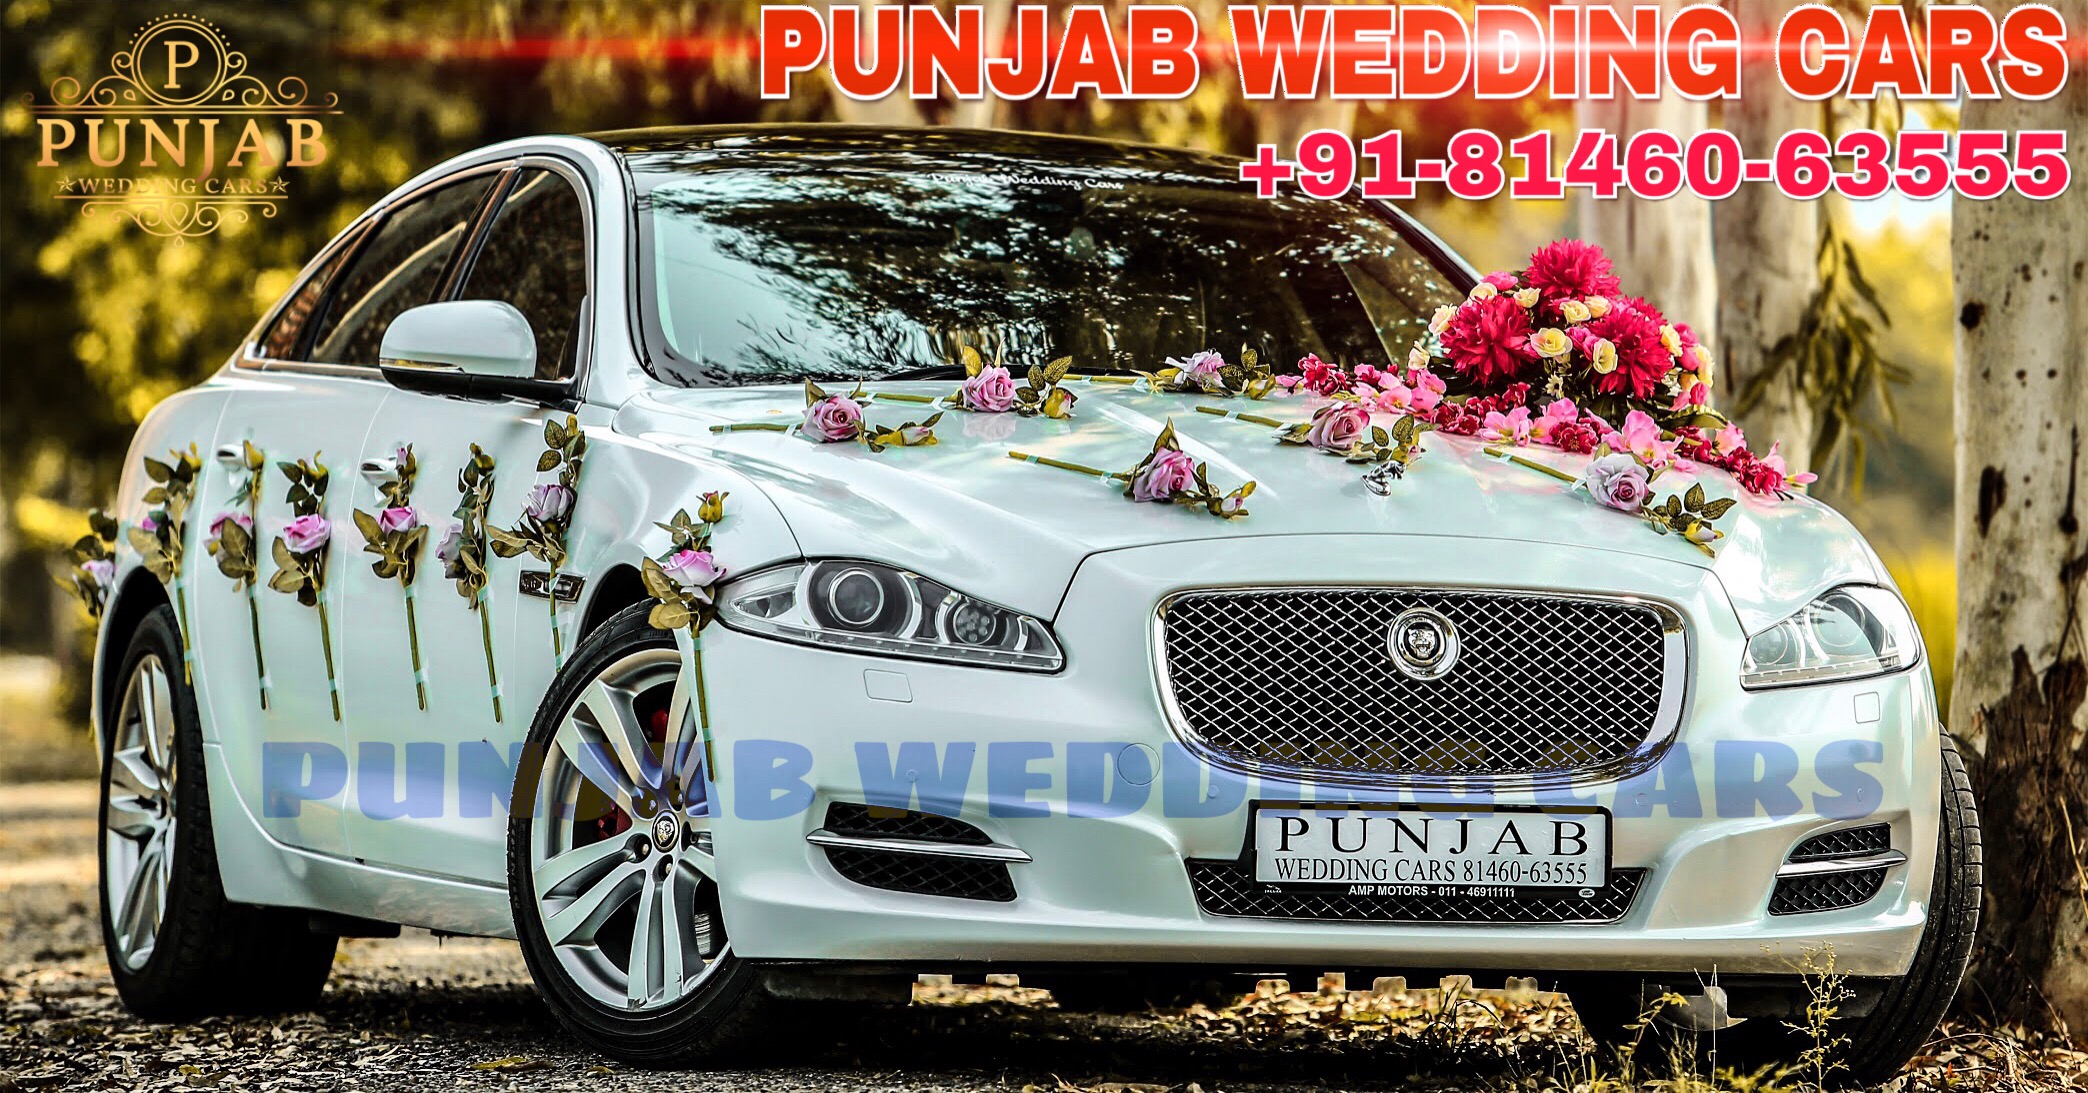 WEDDING CARS Jaguar XJL wedding cars Punjab Jaguar XJL wedding cars Punjab for wedding rental in Punjab, India